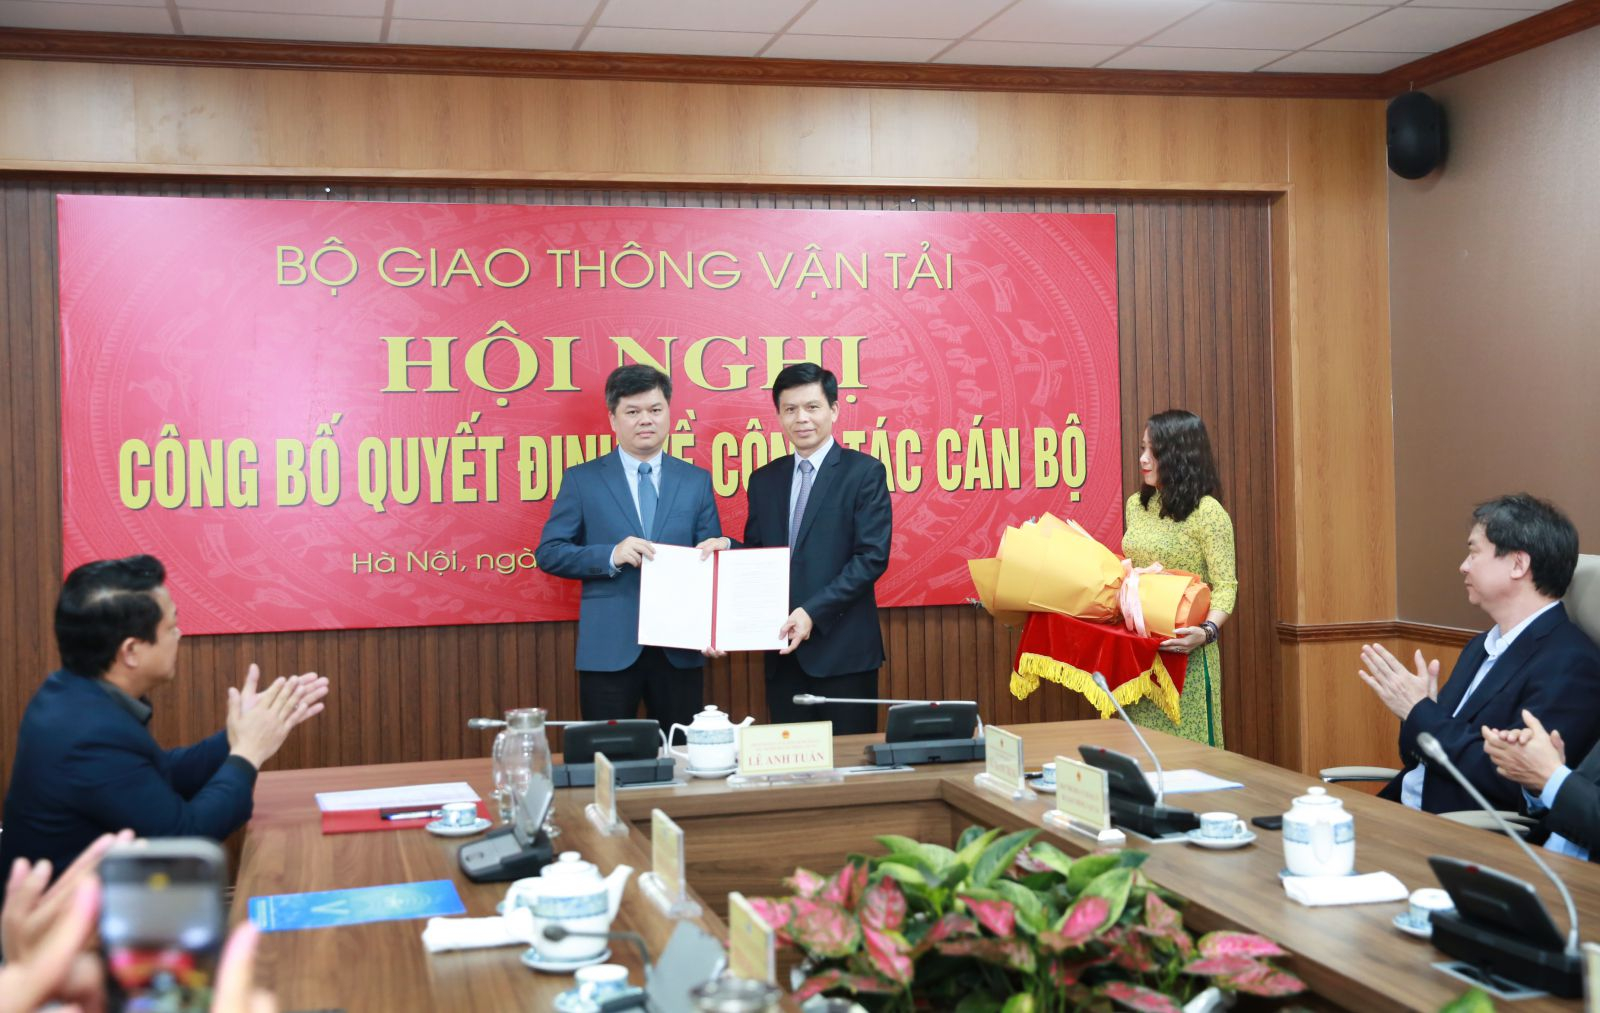 Thứ trưởng Lê Anh Tuấn trao quyết định Thành viên Hội đồng thành viên VATM  cho ông Nguyễn Công Long